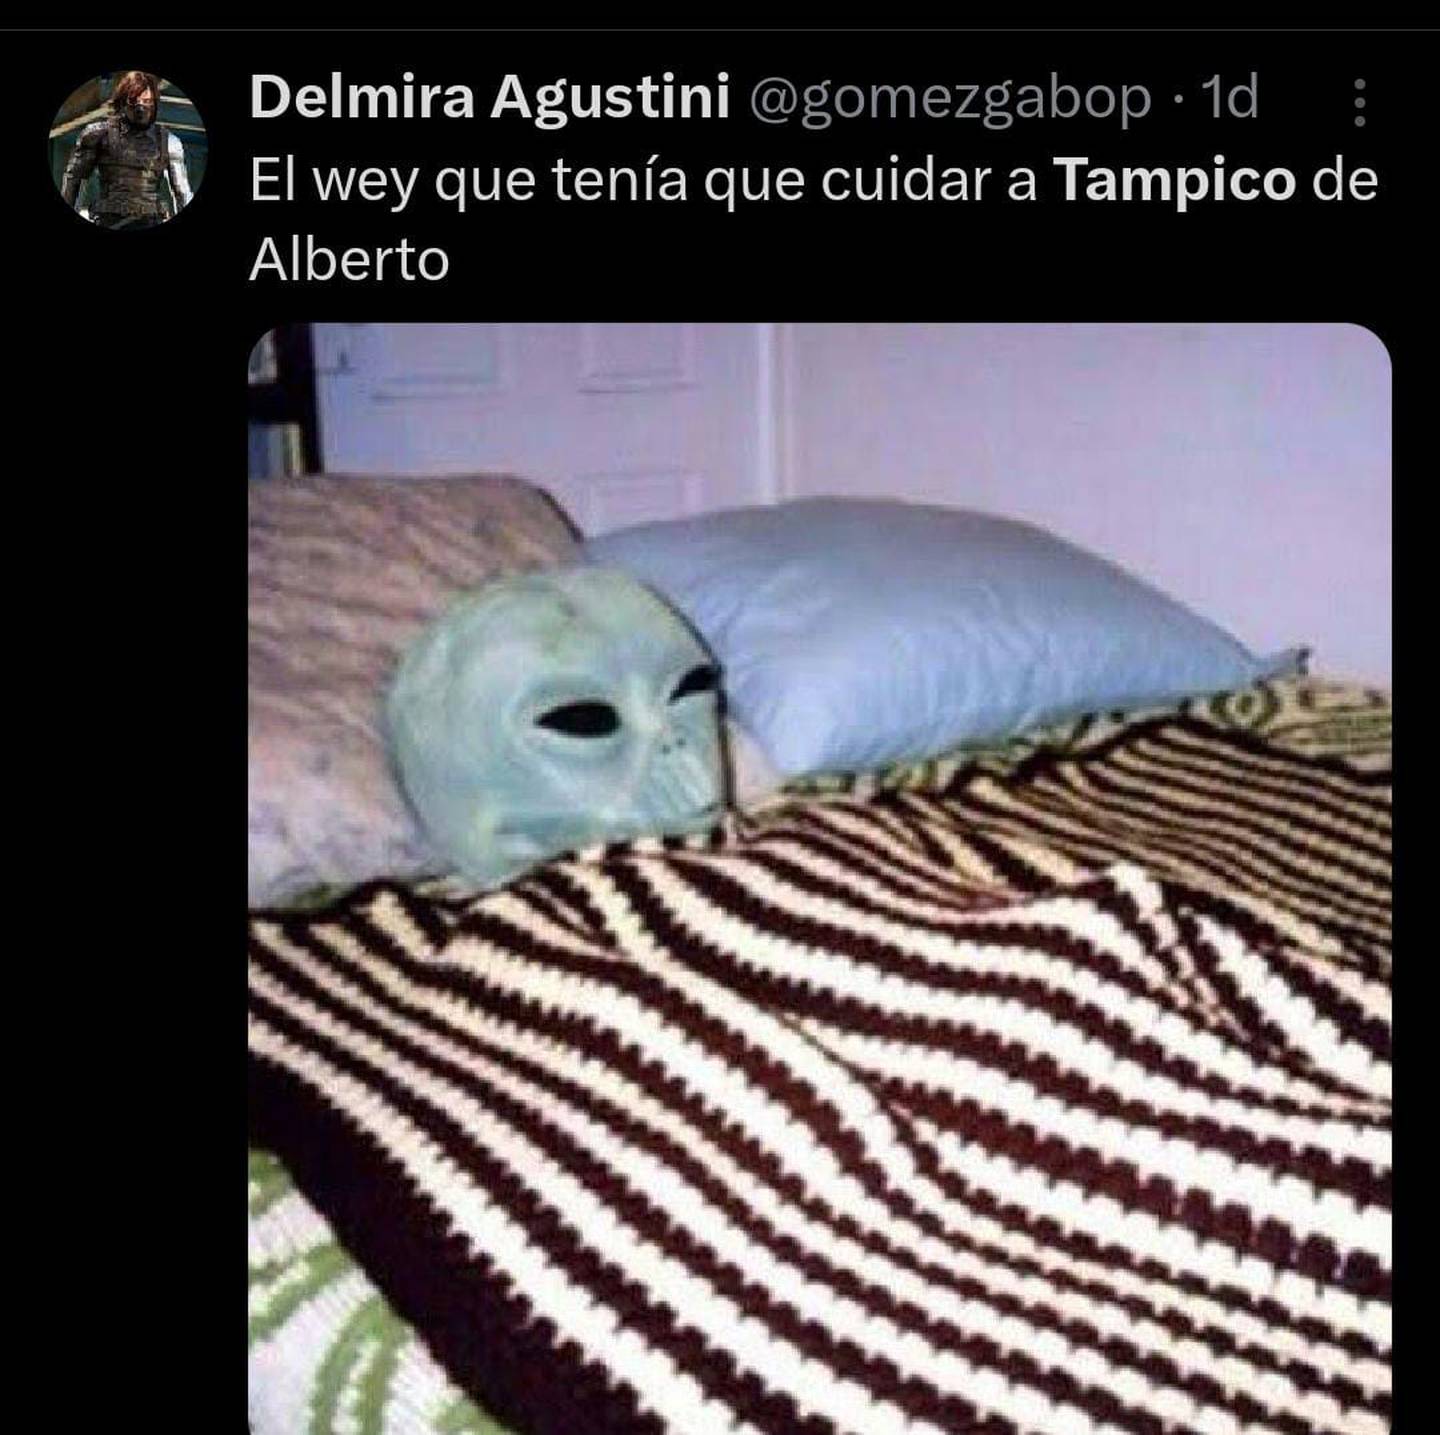 Al principio se creía que los aliens no aparecerían para defender Tampico. (Captura: Redes sociales)